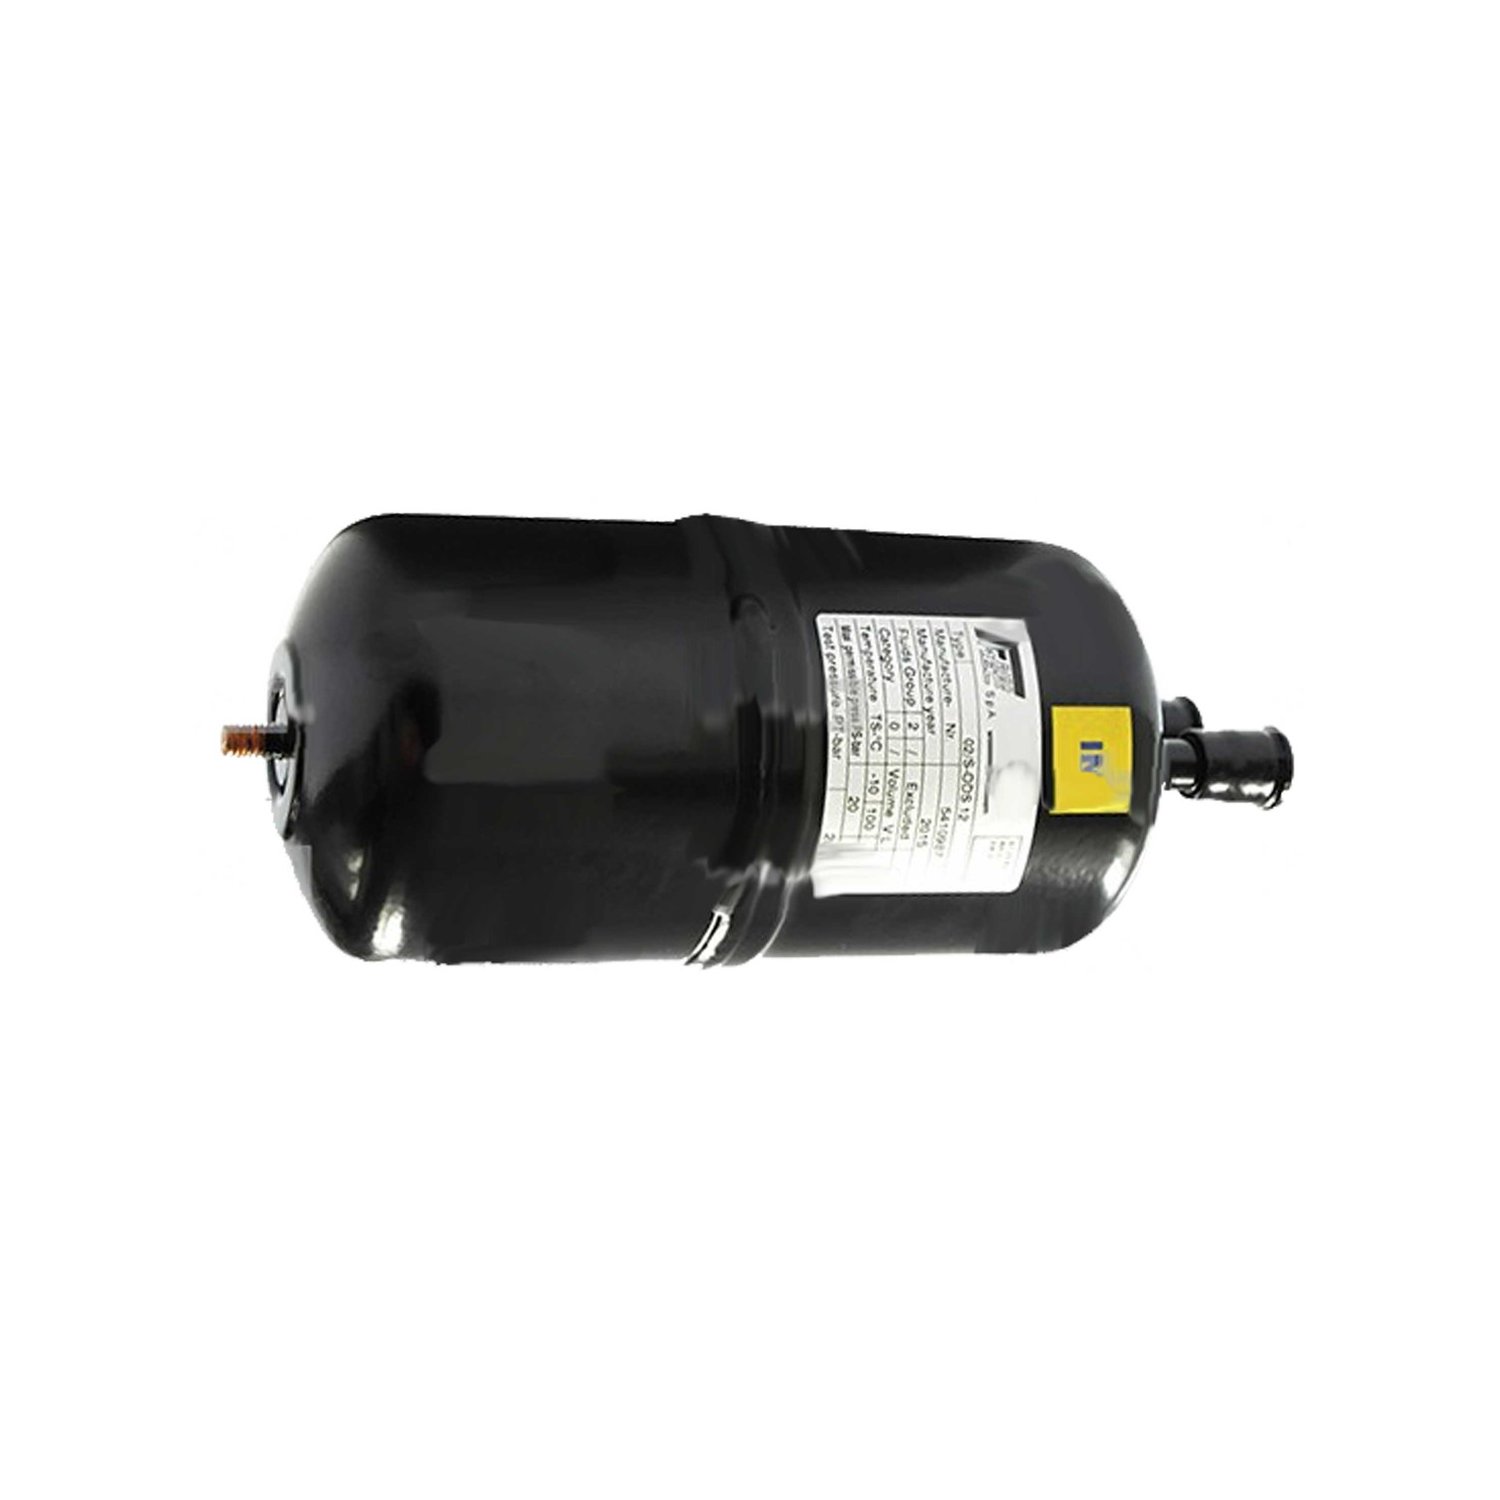 Separador de líquidos Frigomec 02 / S 16 mm, volumen: 1,3 l, conexión: 16 mm